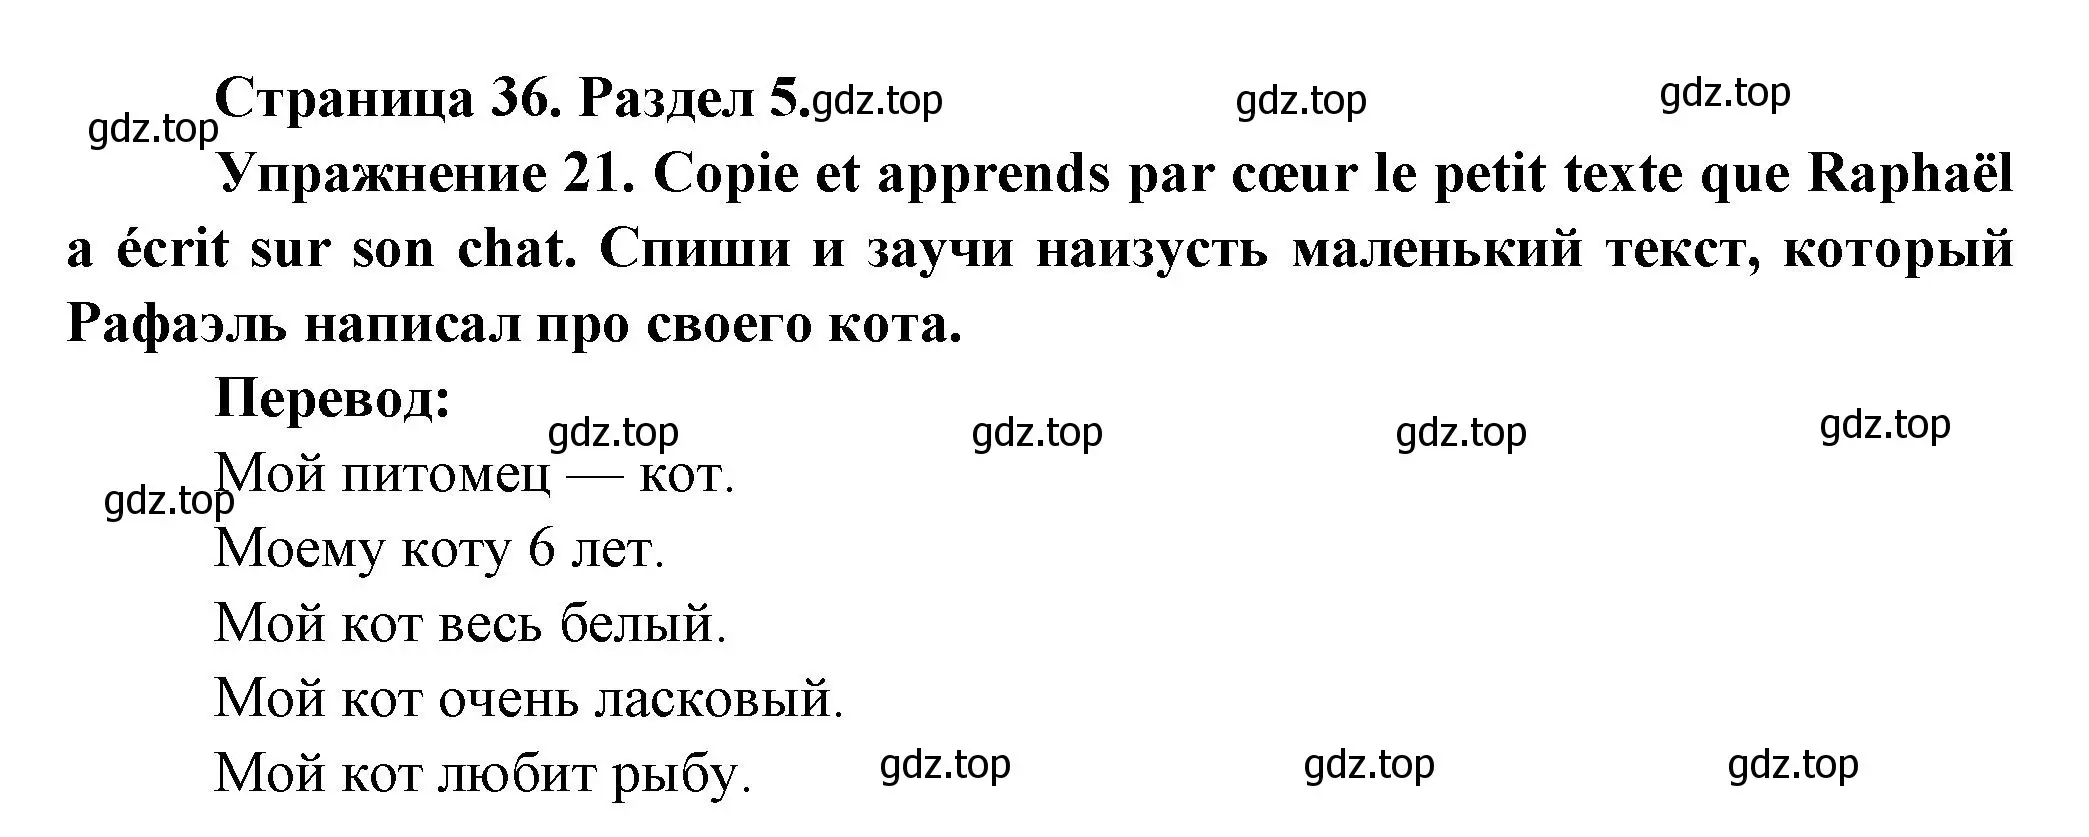 Решение номер 21 (страница 36) гдз по французскому языку 5 класс Береговская, Белосельская, учебник 2 часть